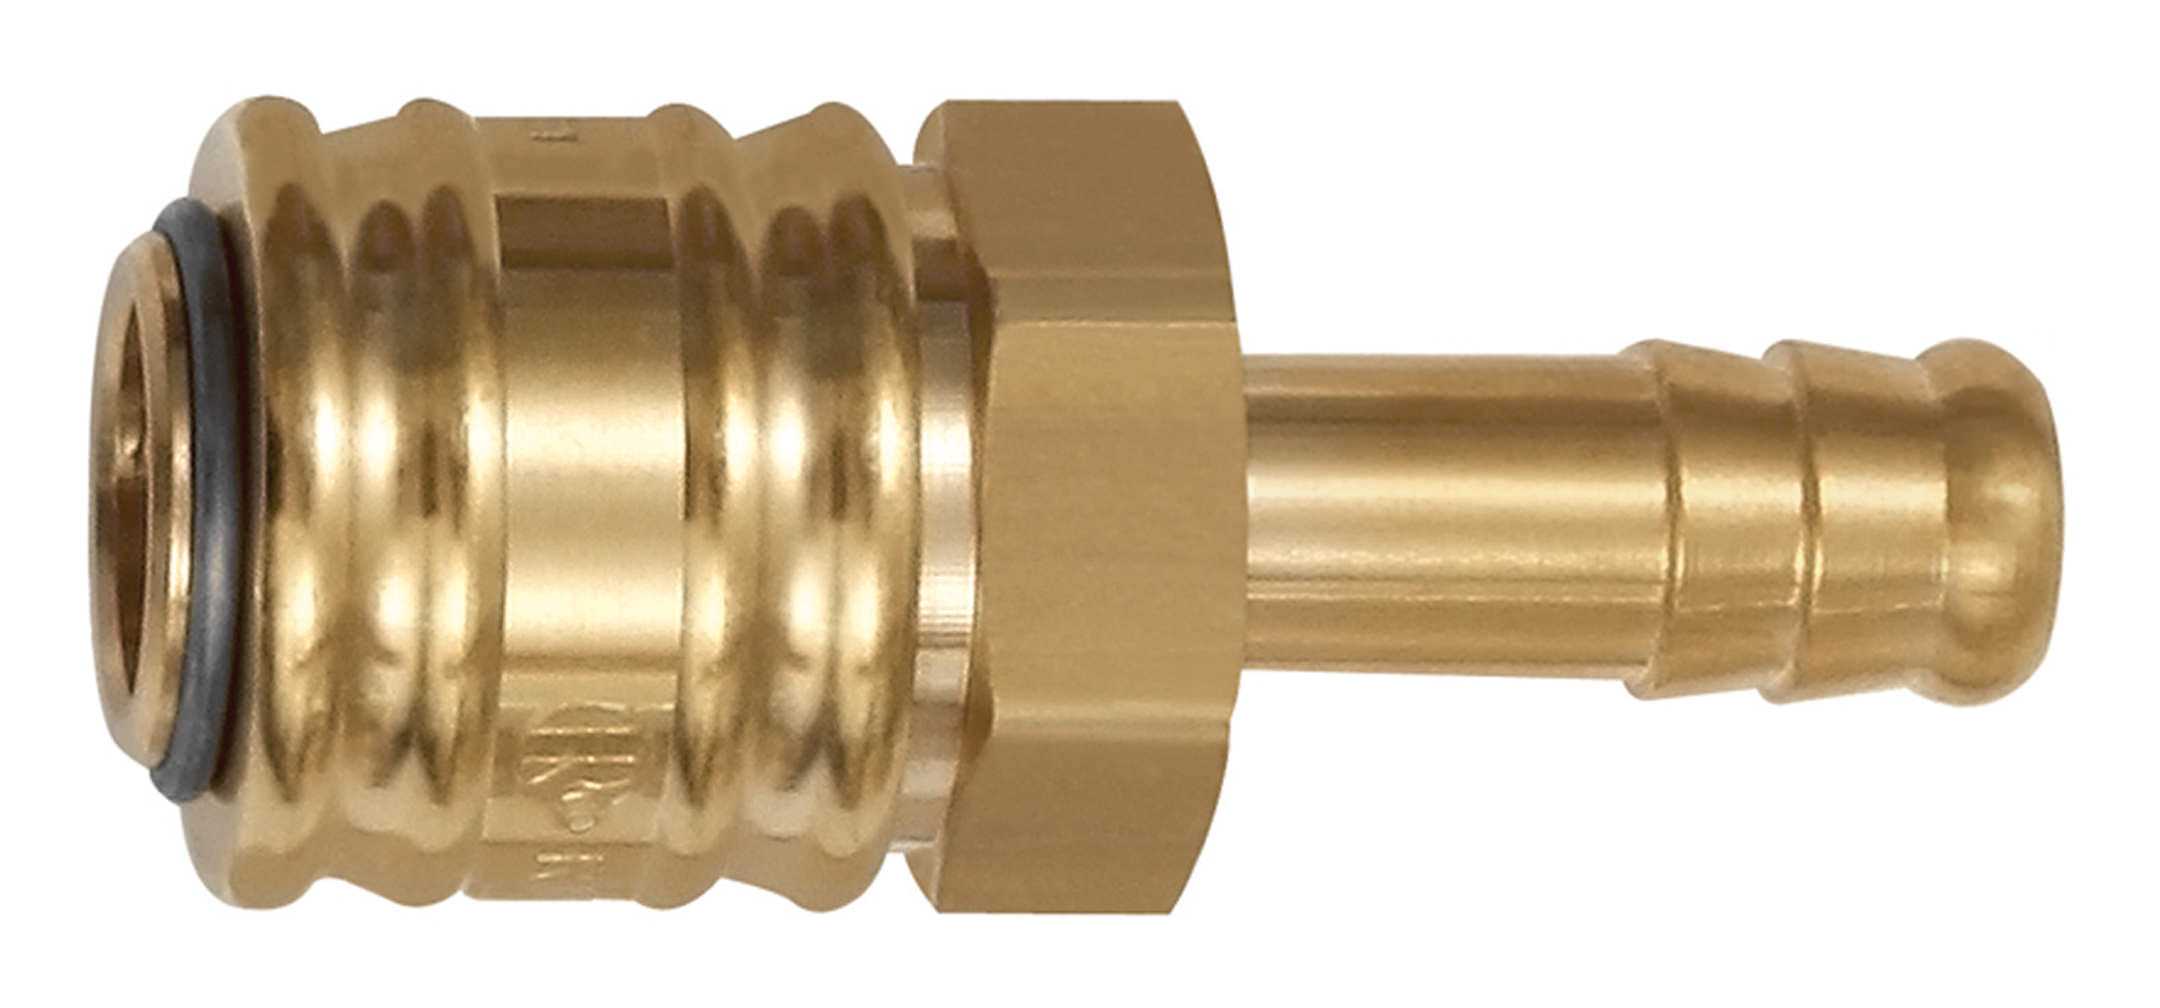 RIEGLER Schnellverschlusskupplung NW7,2 Messing Tülle LW 9 mm 